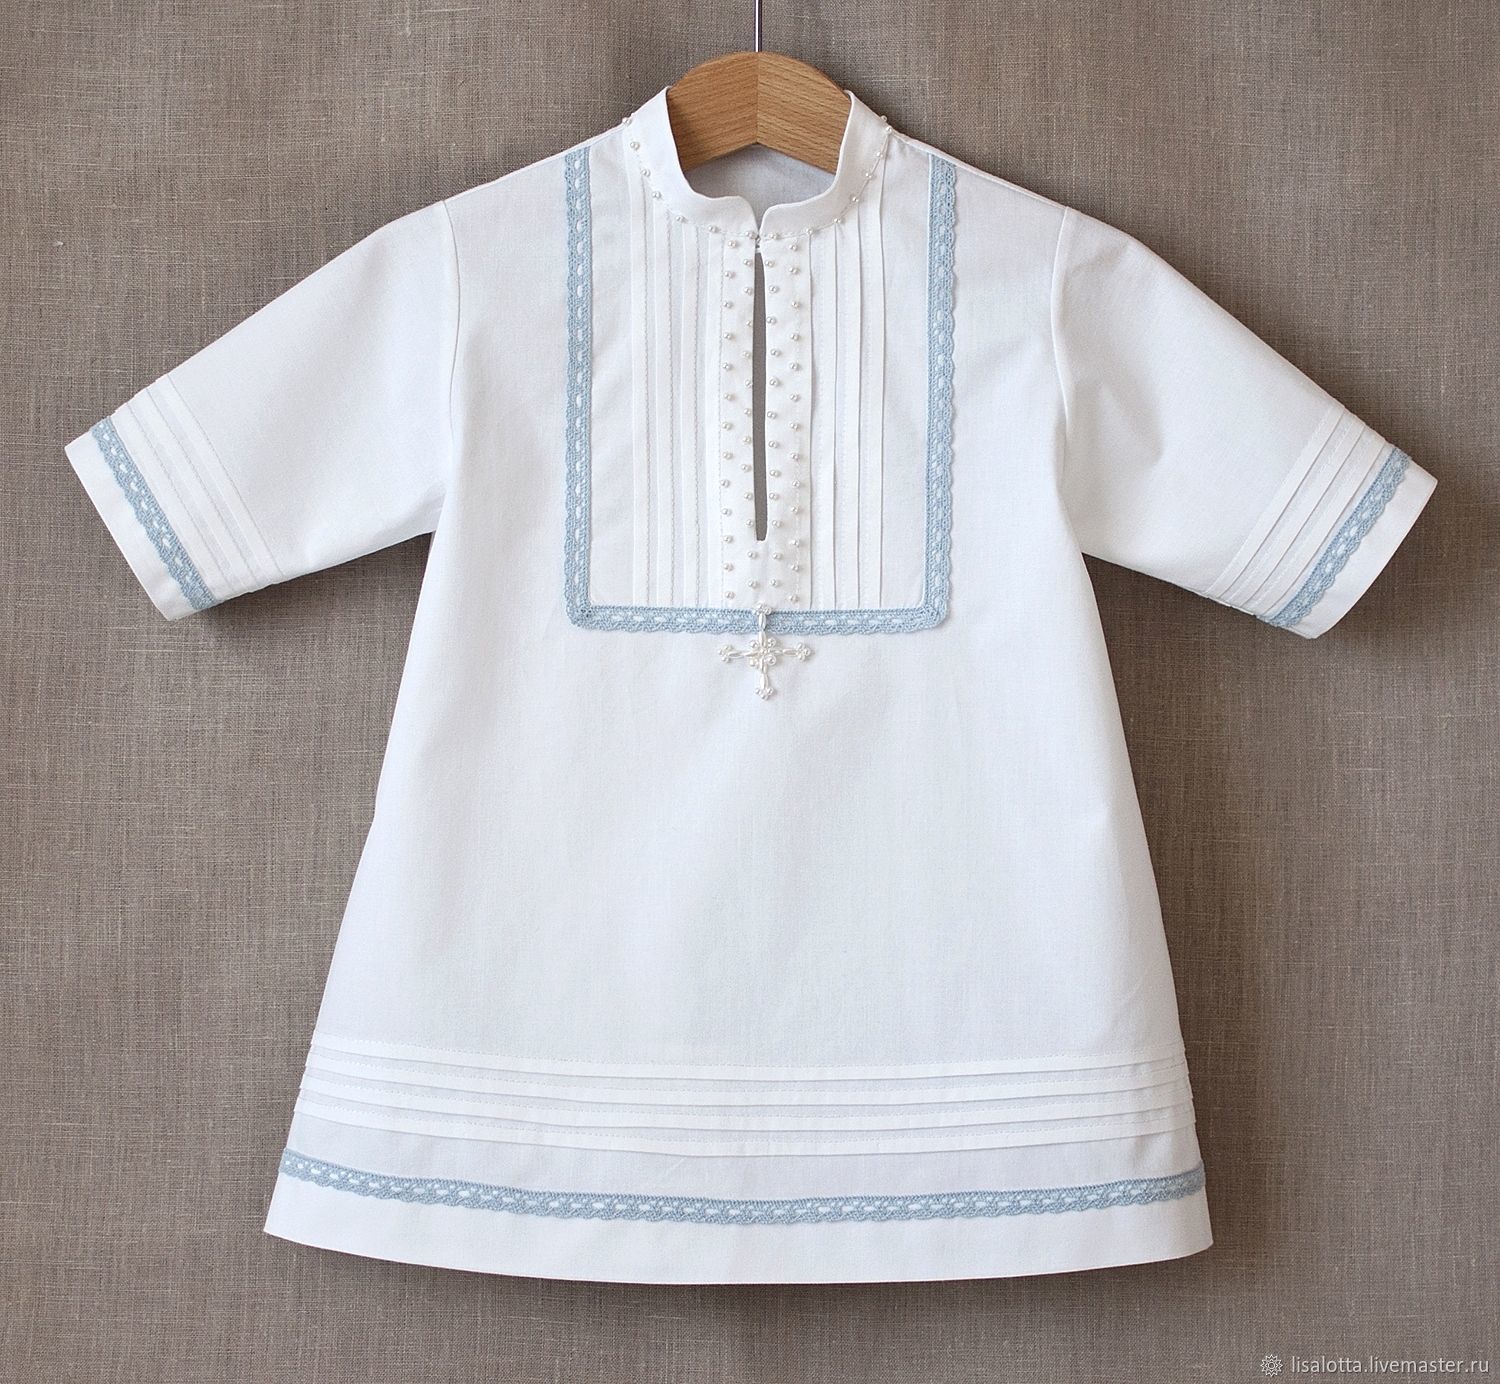 Как выбрать крестильную одежду для малыша?